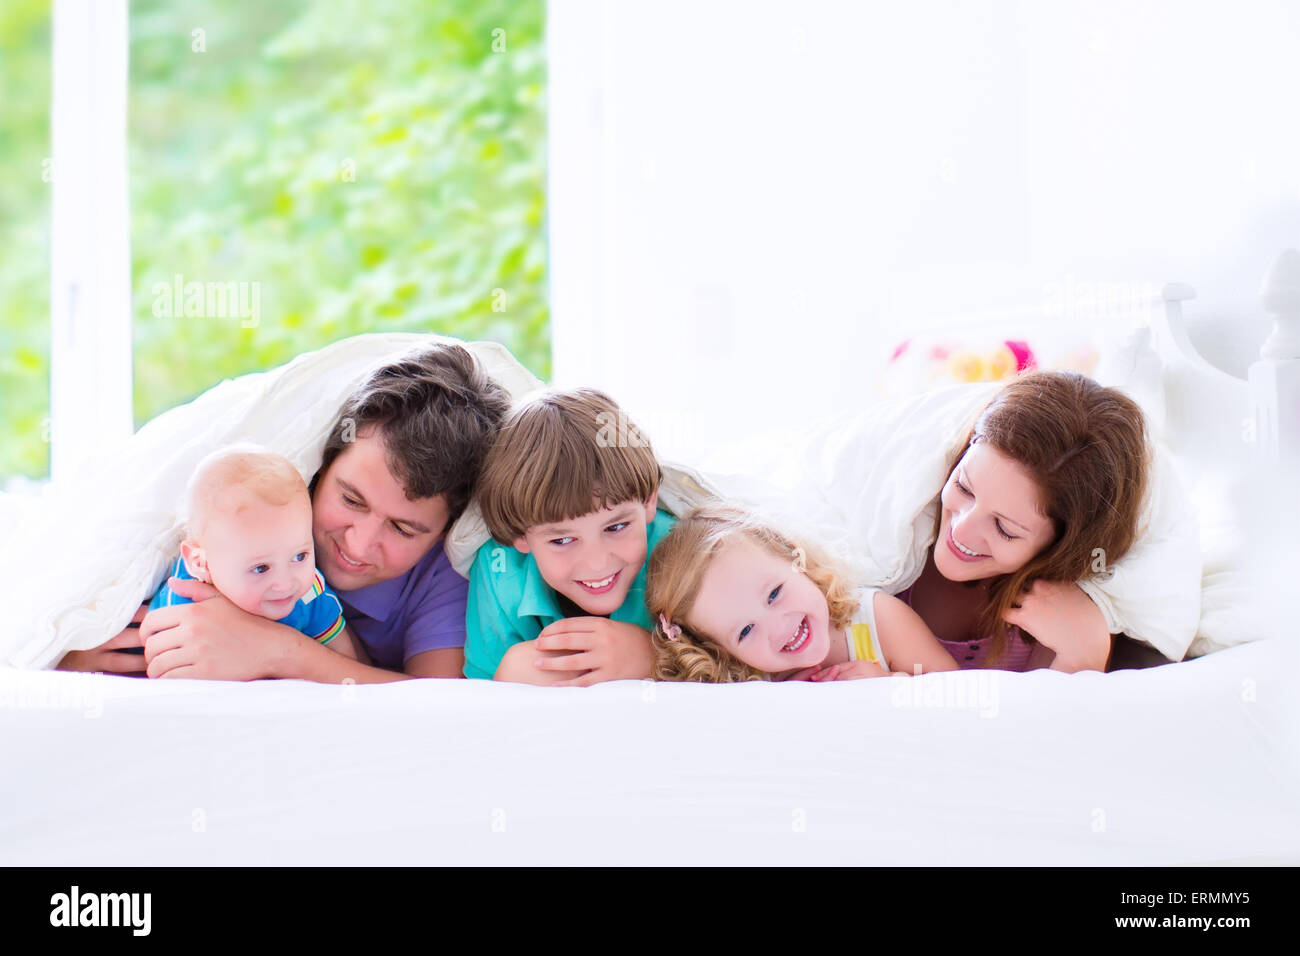 Grande famille heureuse, les jeunes parents avec trois enfants, rire, bébé fille et garçon adorable petit baby wearing pyjamas colorés Banque D'Images